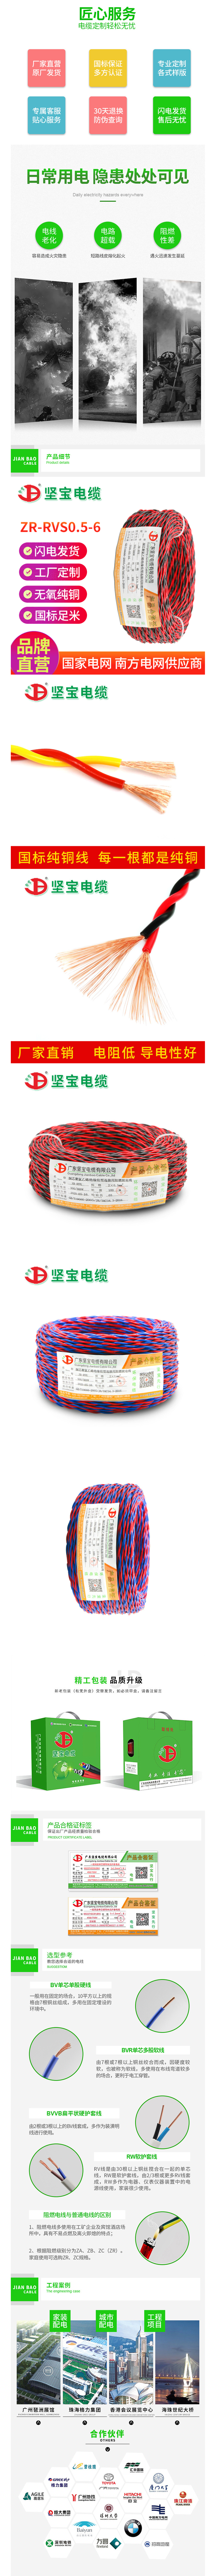 坚宝电缆 国标 无氧铜 消防 阻燃 ZR-RVS0.5-6平方电线电缆-阿里巴巴.png